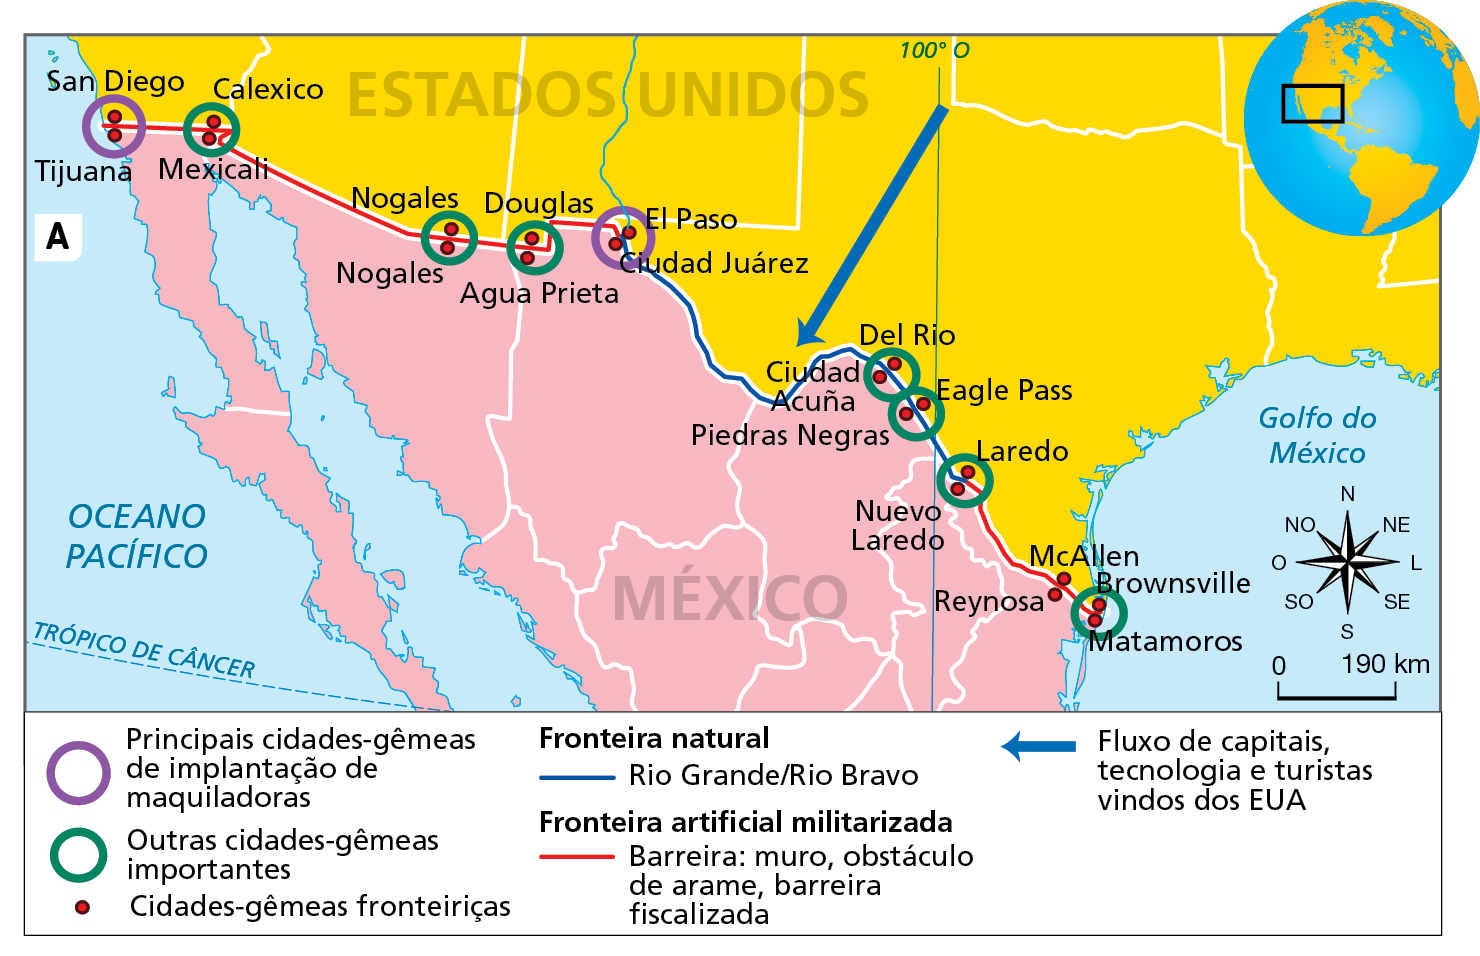 Mapa A. Fronteira México-Estados Unidos: indústrias maquiladoras.  Mapa representando a zona de fronteira entre o México e os Estados Unidos. Na parte superior, trecho fronteiriço do território dos Estados Unidos, com a delimitação dos estados e uma flecha azul indicando a direção do fluxo de capitais, tecnologia e turistas vindos dos EUA para o México. Na parte inferior, trecho fronteiriço do território do México, também com a delimitação dos estados. No limite entre ambos os países, traçado da fronteira e localização das cidades gêmeas.  Principais cidades-gêmeas de implantação de maquiladoras: San Diego-Tijuana, El Paso-Ciudad Juarez. Outras cidades-gêmeas importantes: Calexico-Mexicale, Nogales-Nogales, Douglas-Agua Prieta, Del Rio-Acuña, Eagle Pass-Piedras Negras, Laredo-Nuevo Laredo, Brownsville-Matamoros. Cidades-gêmeas fronteiriças: McAllen-Reynosa.  Fronteira artificial militarizada (barreira: muro, obstáculo de arame, barreira fiscalizada): do litoral do Pacífico até as cidades-gêmeas de El Paso-Ciudad Juarez, e de Laredo-Nuevo Laredo até o litoral do Golfo do México.  Fronteira natural (Rio Grande-Rio Bravo): trecho entre as cidades-gêmeas de El Paso-Ciudad Juarez até Laredo-Nuevo Laredo.  Na parte inferior, à direita, rosa dos ventos e escala de 0 a 190 quilômetros.